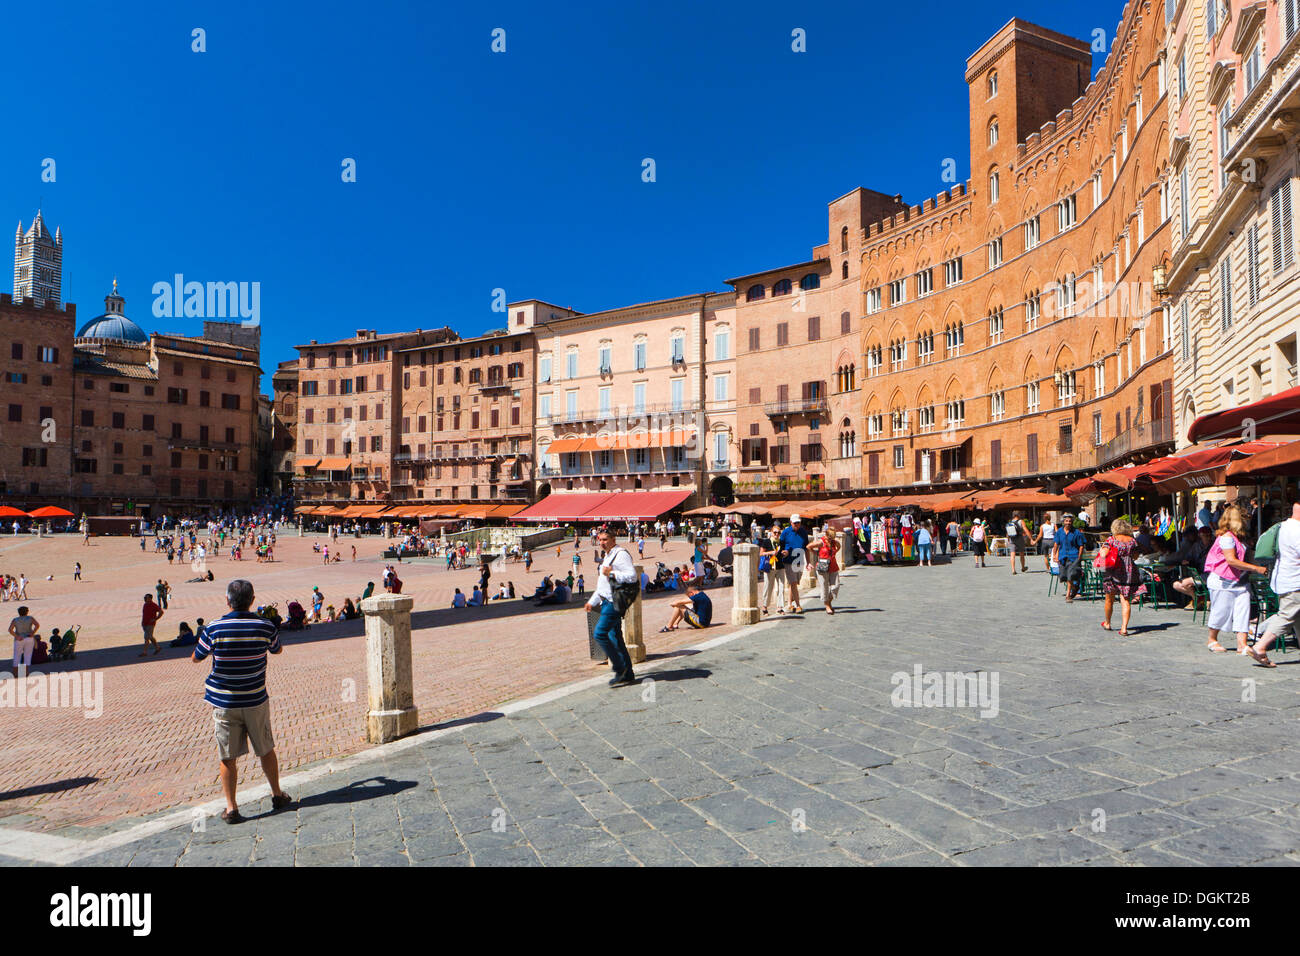 Piazza del Campo in Siena. Stock Photo